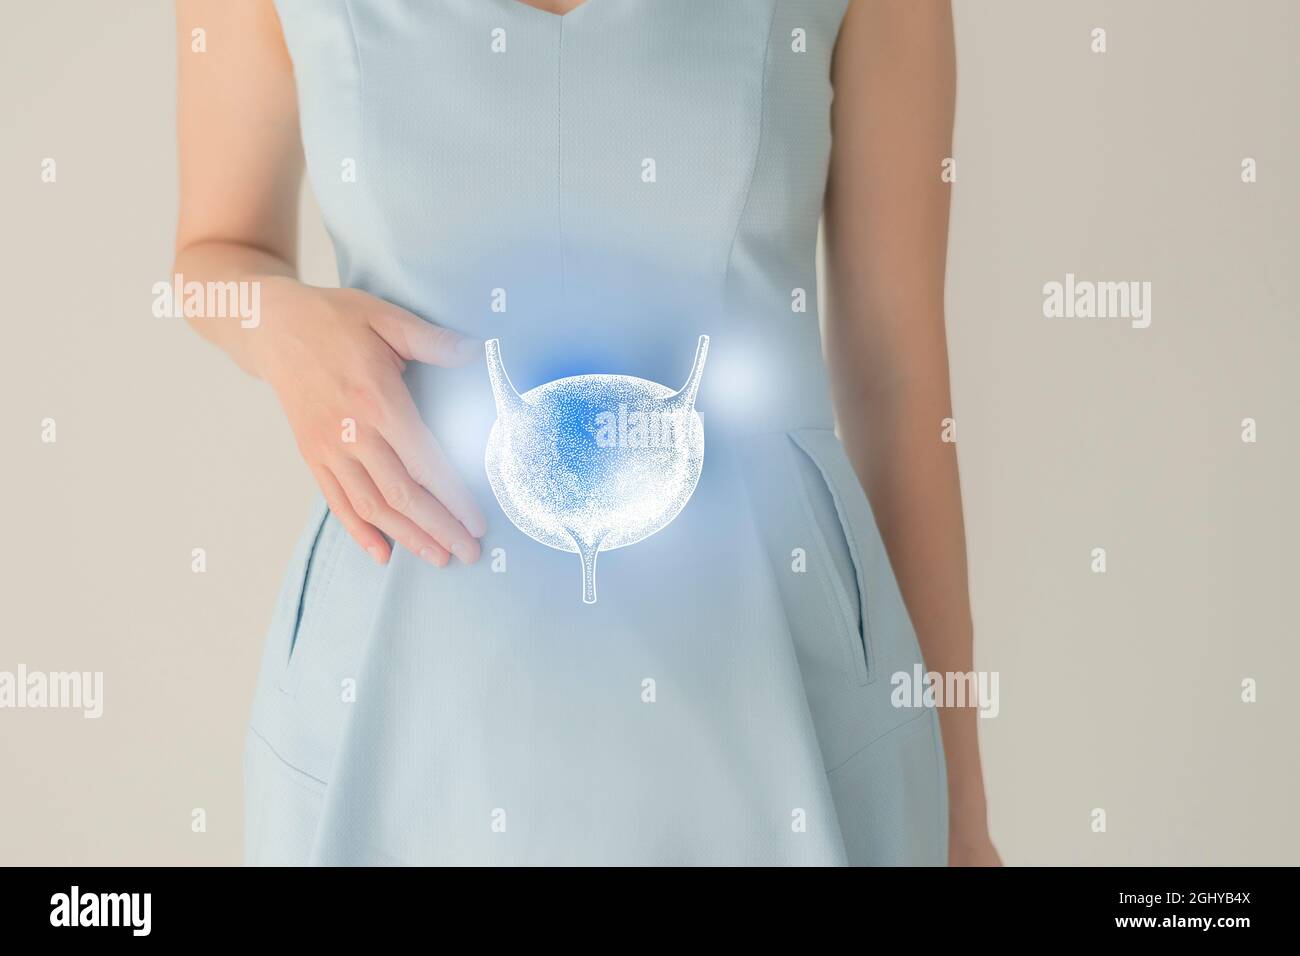 Nicht erkennbare Patientin in blauer Kleidung, hervorgehobene handgezogene Blase in den Händen. Das menschliche Nierensystem stellt ein Konzept dar. Stockfoto